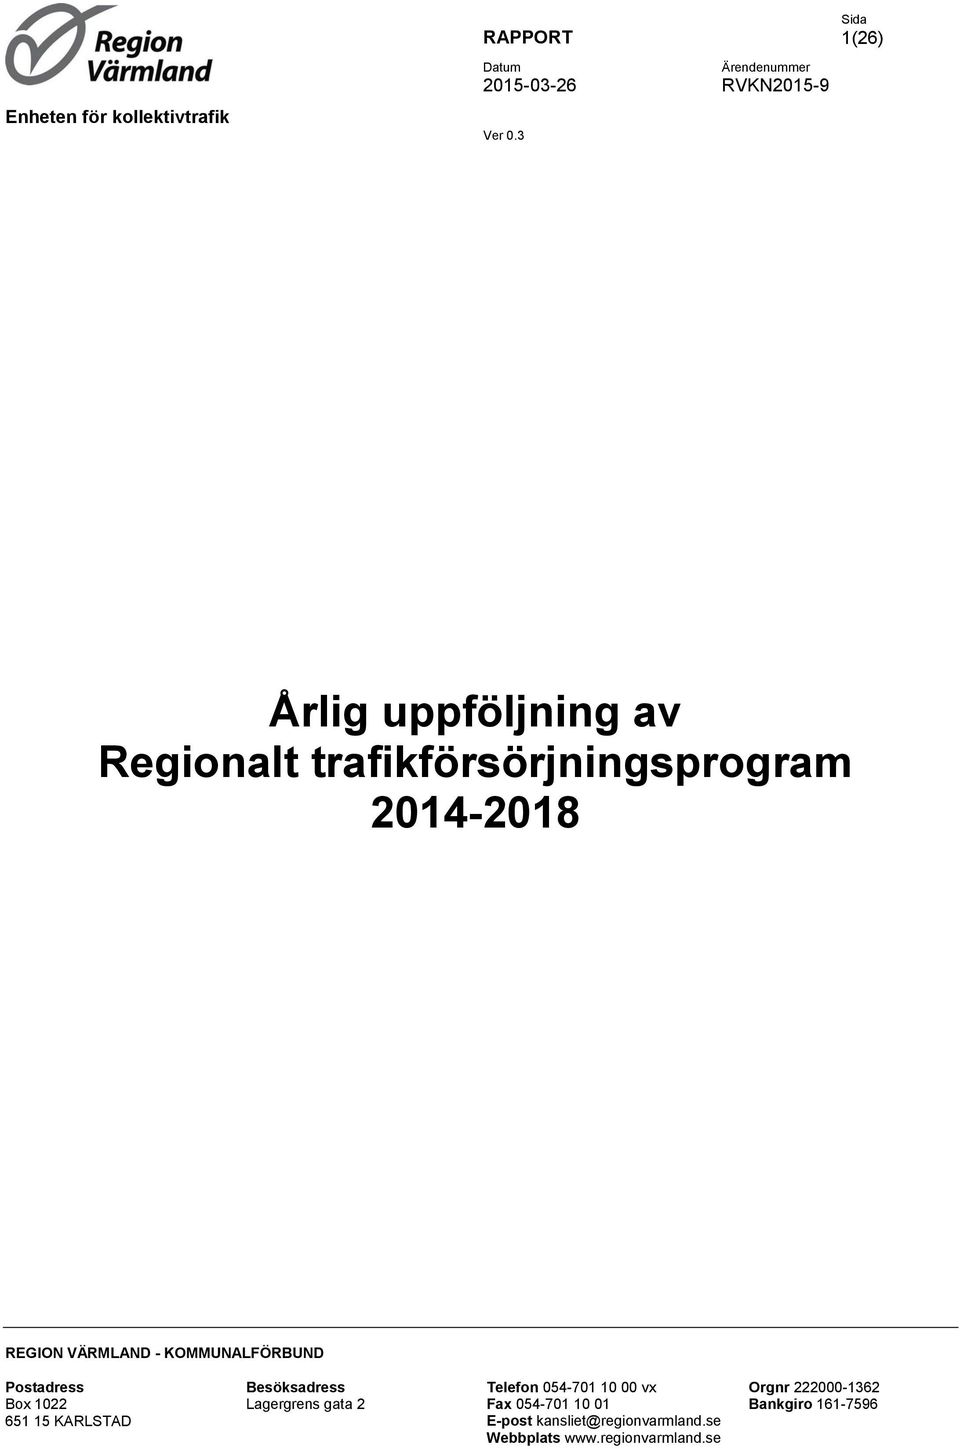 2014-2018 REGION VÄRMLAND - KOMMUNALFÖRBUND Postadress Box 1022 651 15 KARLSTAD Besöksadress